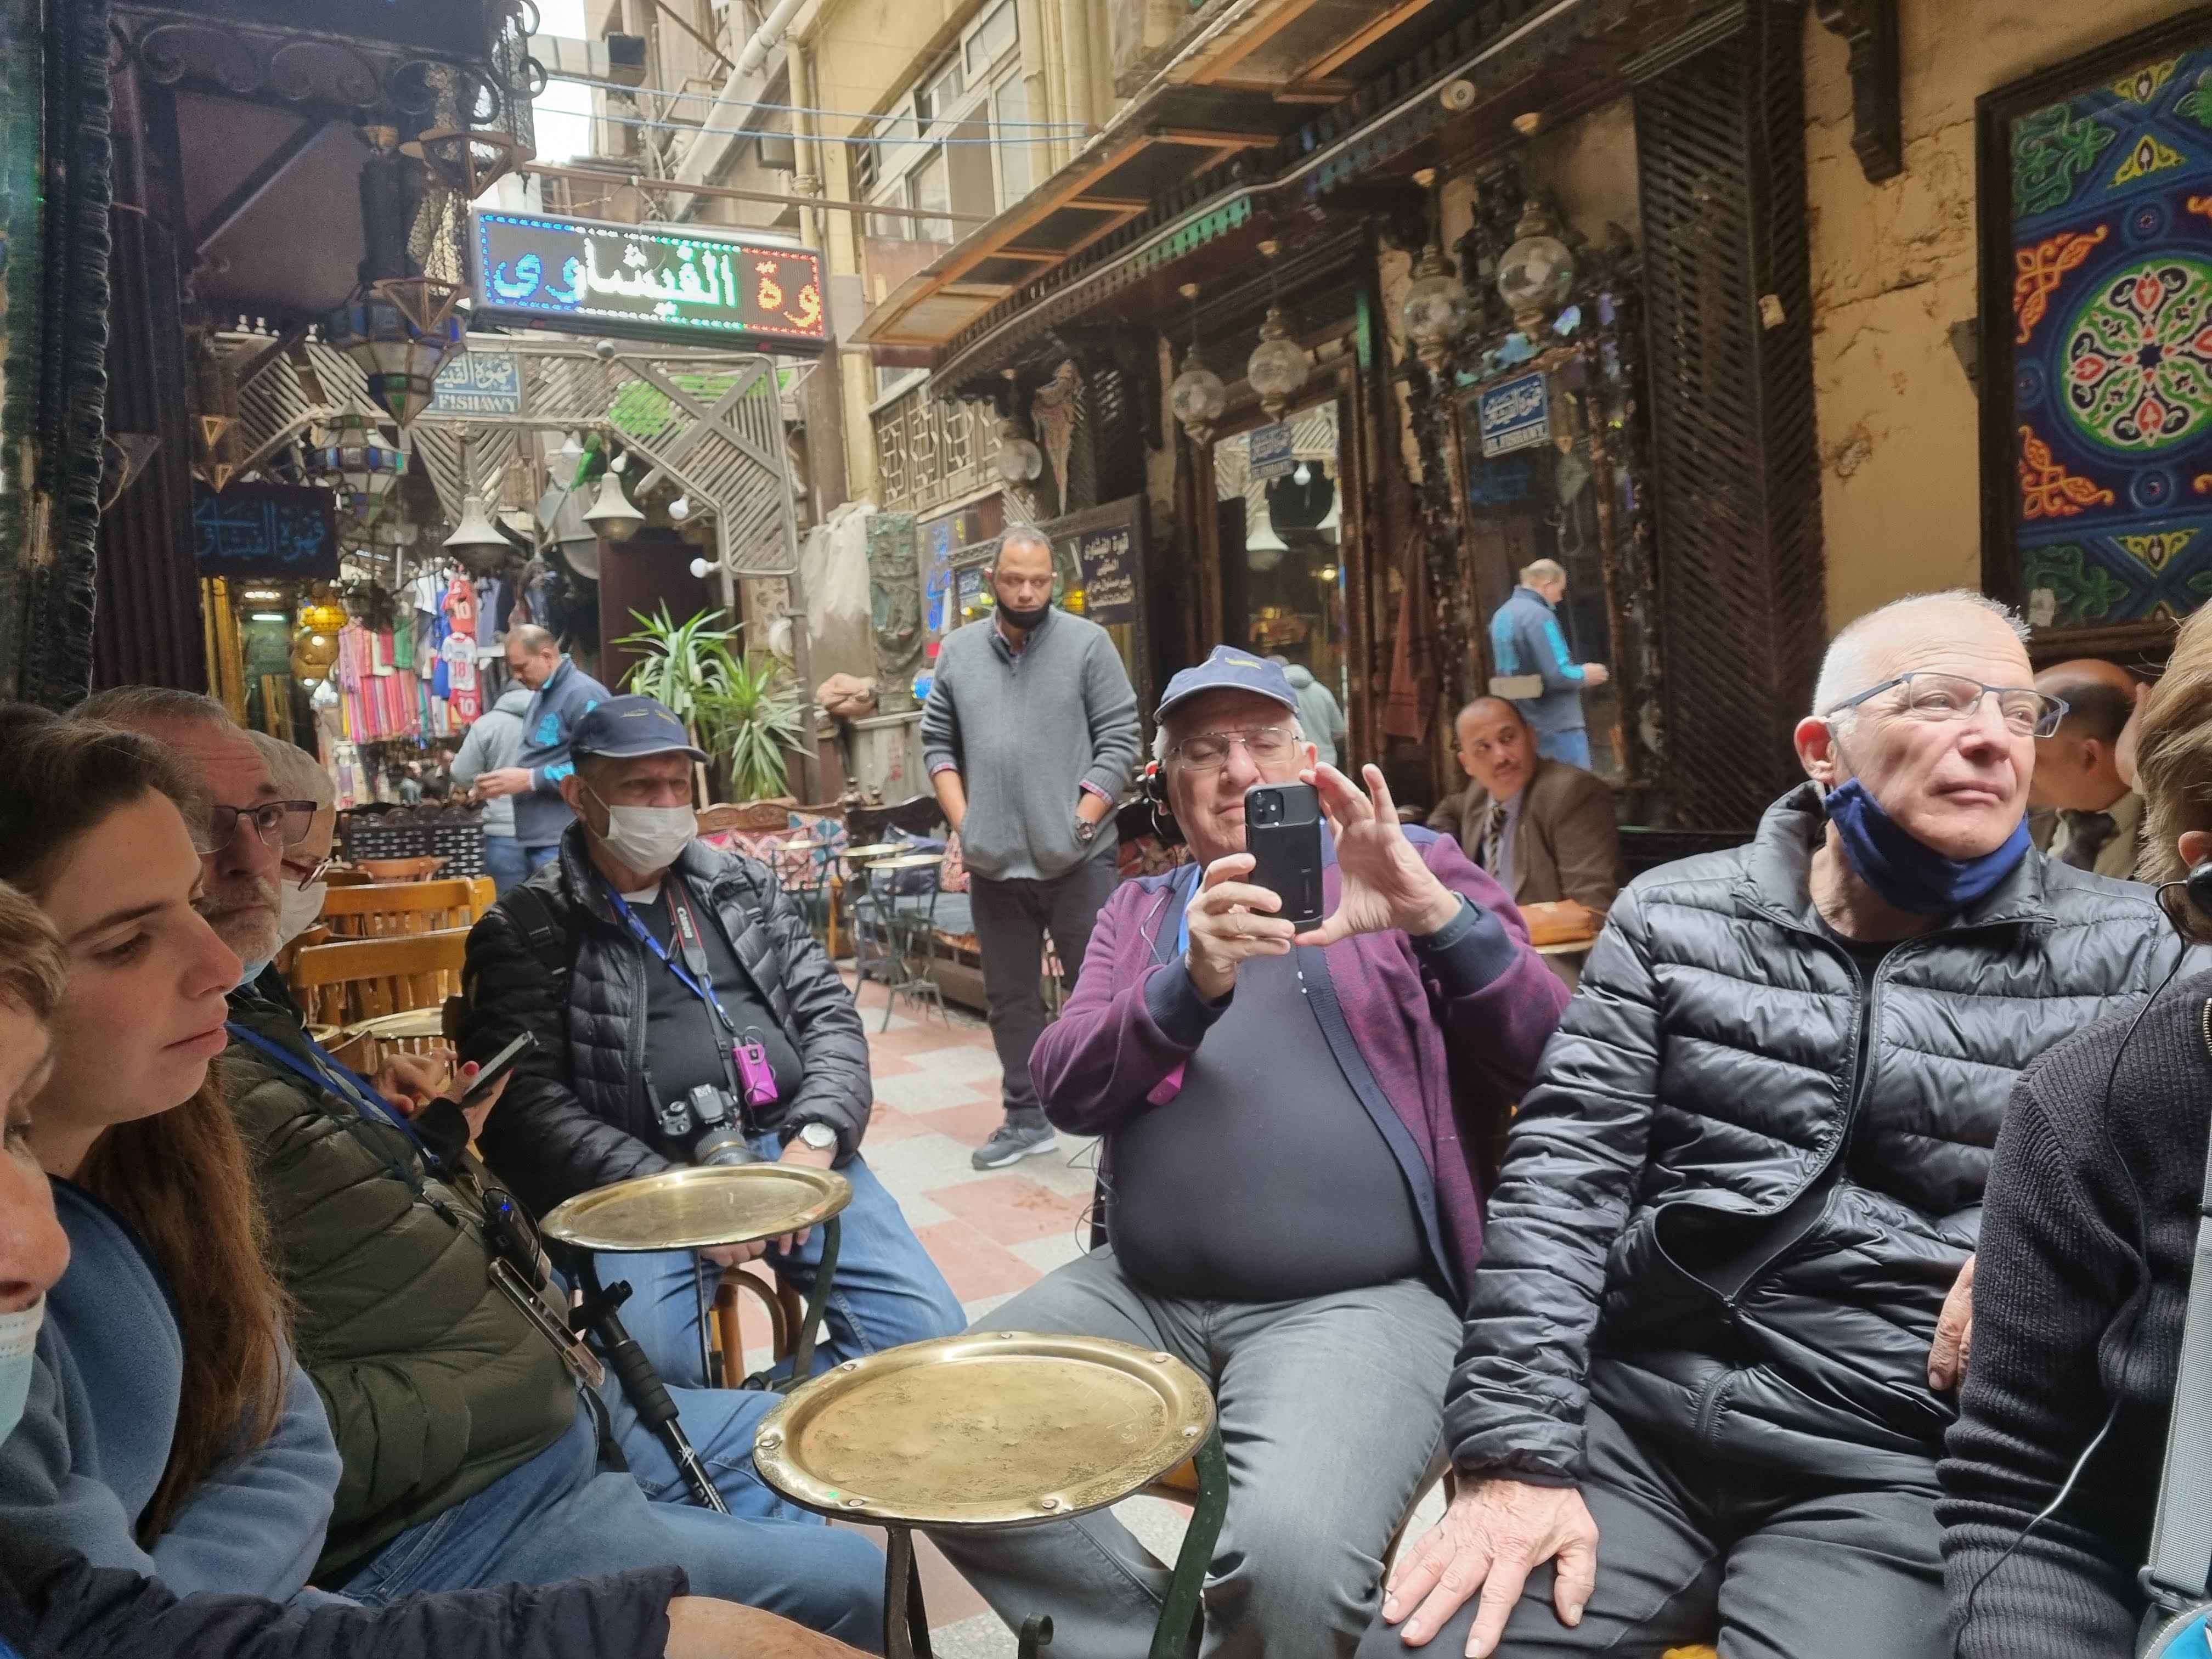 בית הקפה המפורסם בו היה יושב הסופר זוכר פרס הנובל נג'יב מחפוז בשוק חאן אל חליל בקהיר, בו אסף את הרעיונות לספריו.